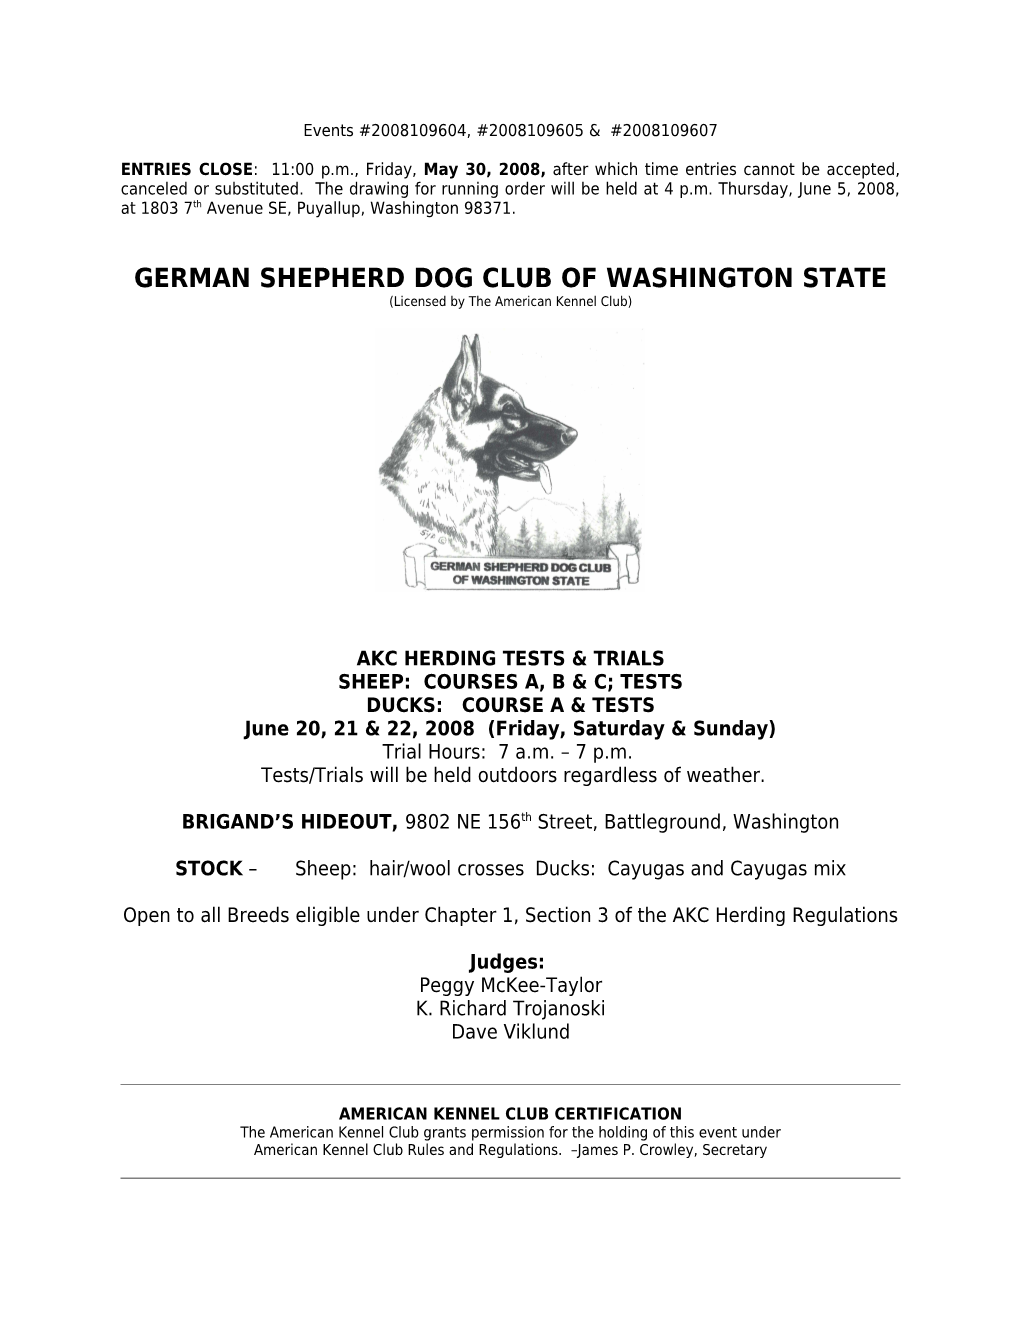 German Shepherd Dog Club of Washington State